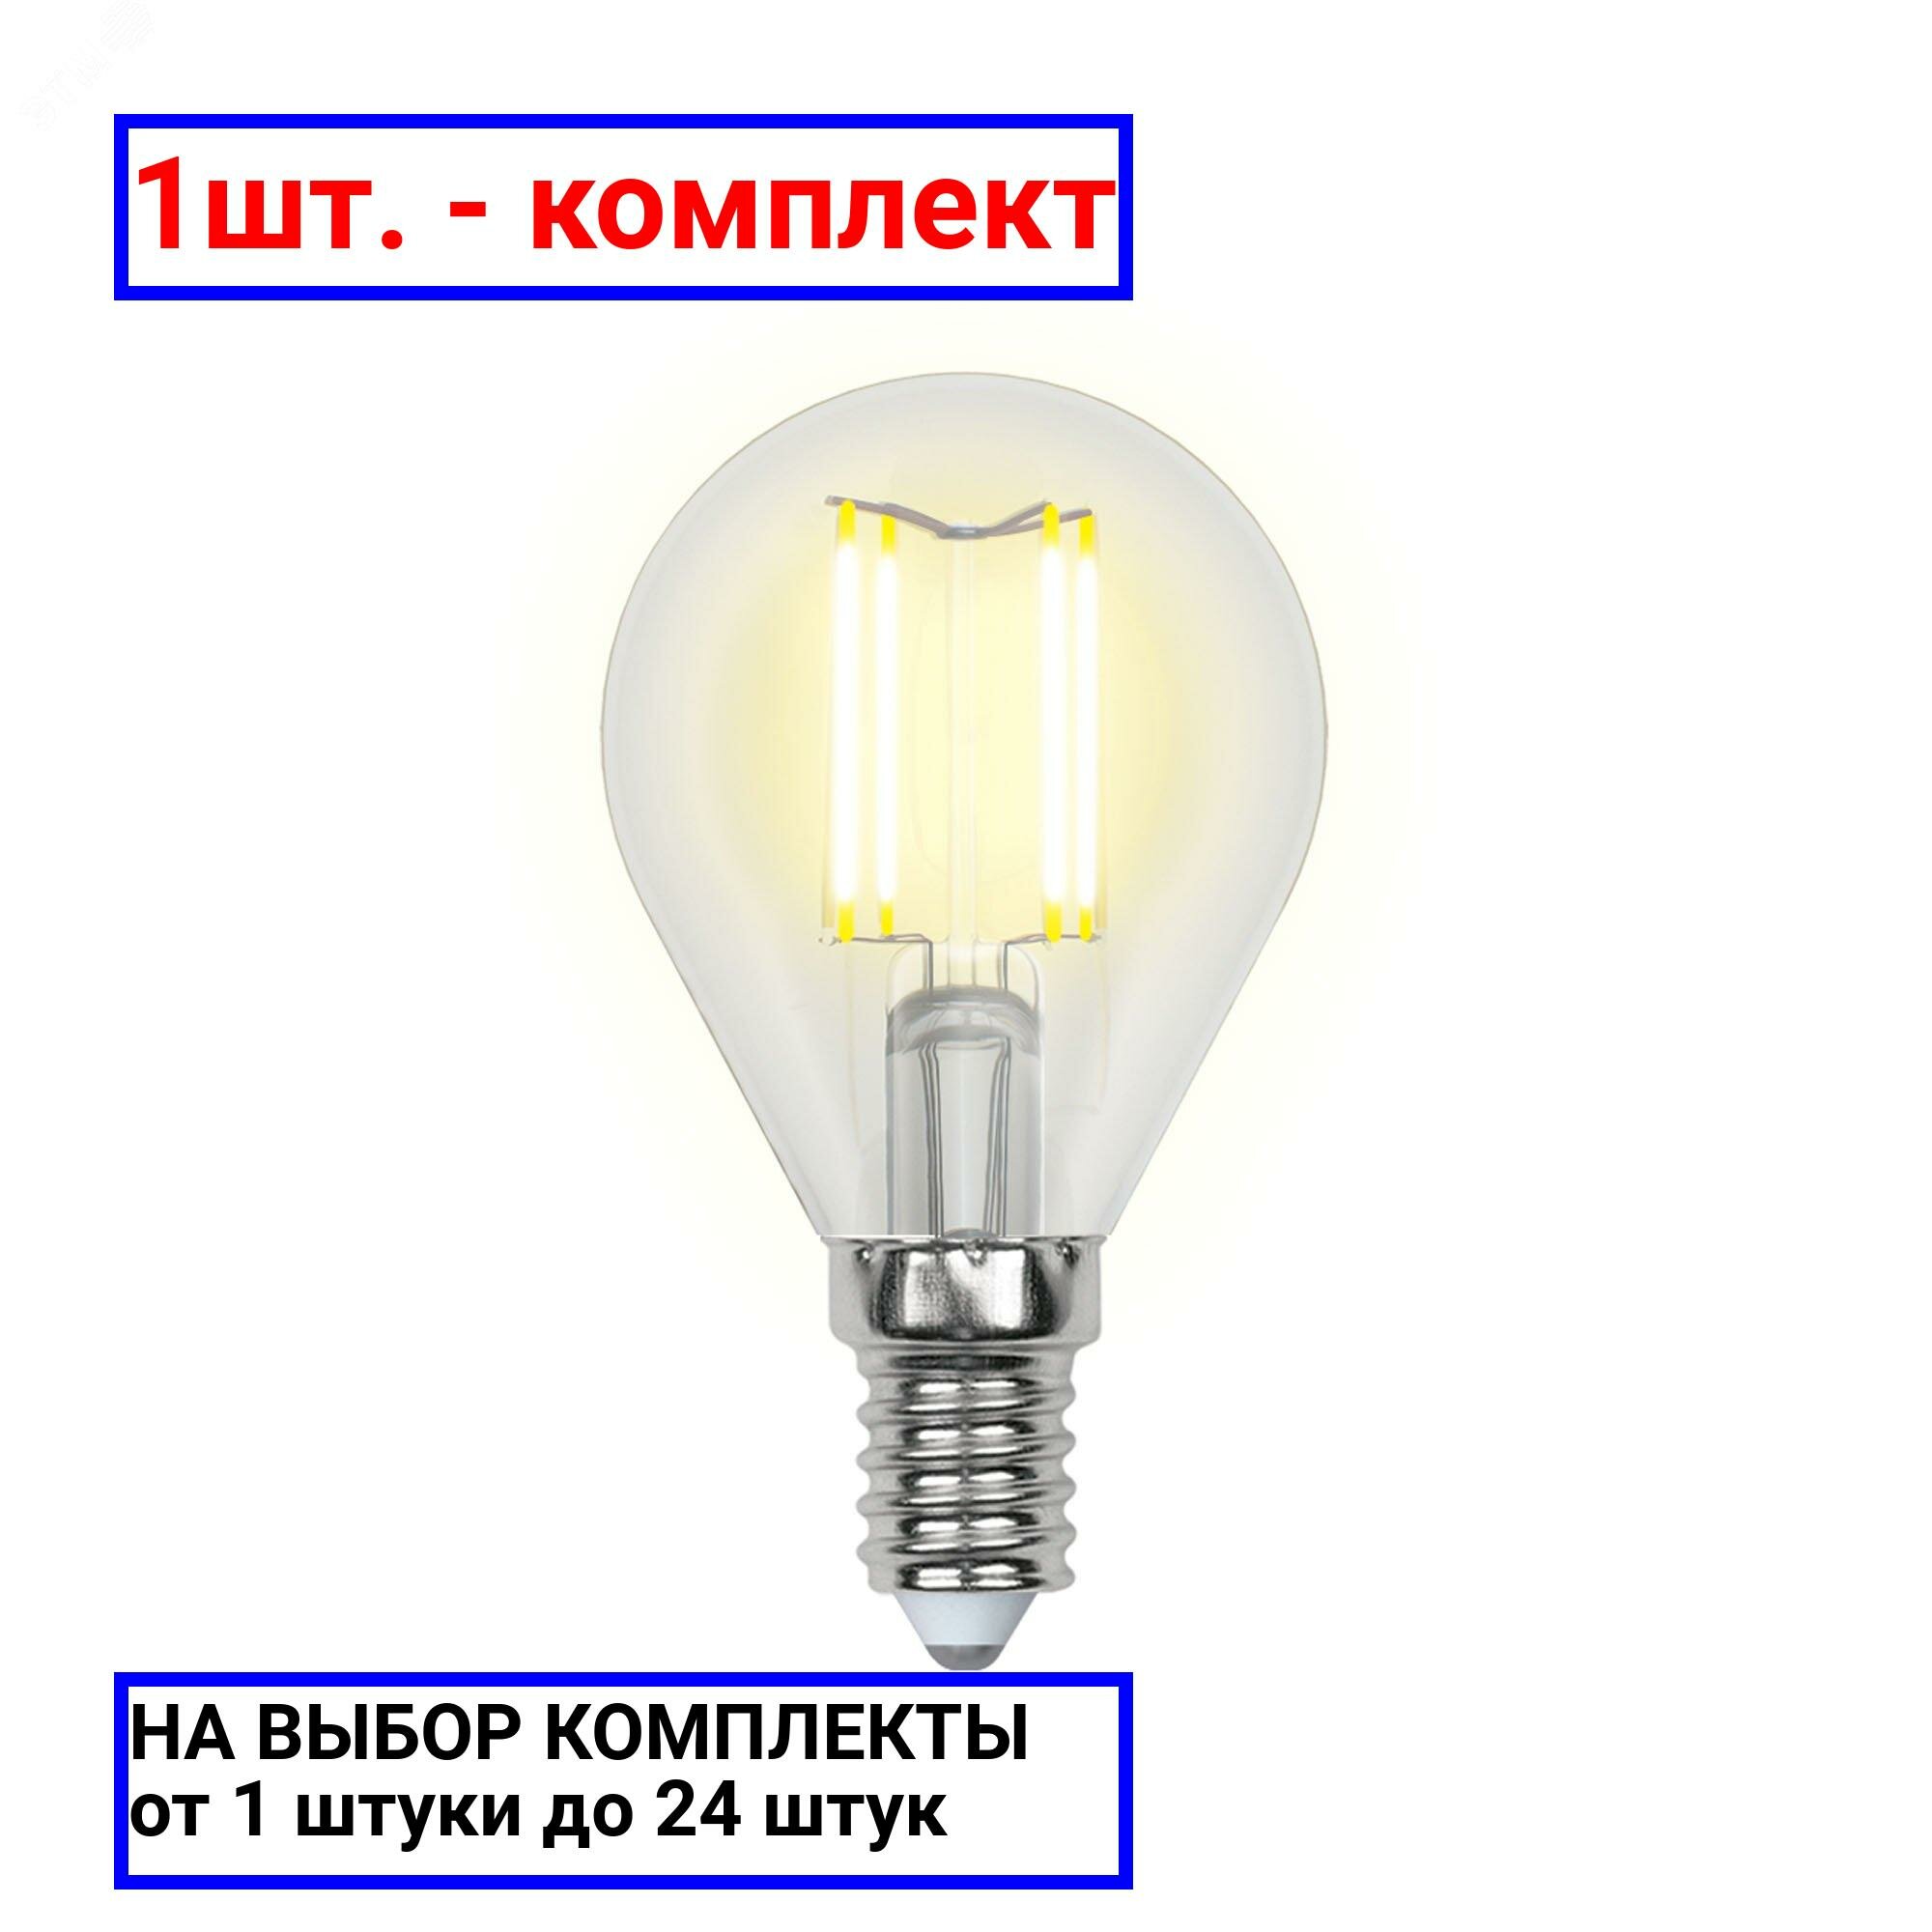 1шт. - Лампа светодиодная LED 5вт 200-250В шар диммируемый 450Лм Е14 4000К Air филамент / Uniel; арт. UL-00002870; оригинал / - комплект 1шт